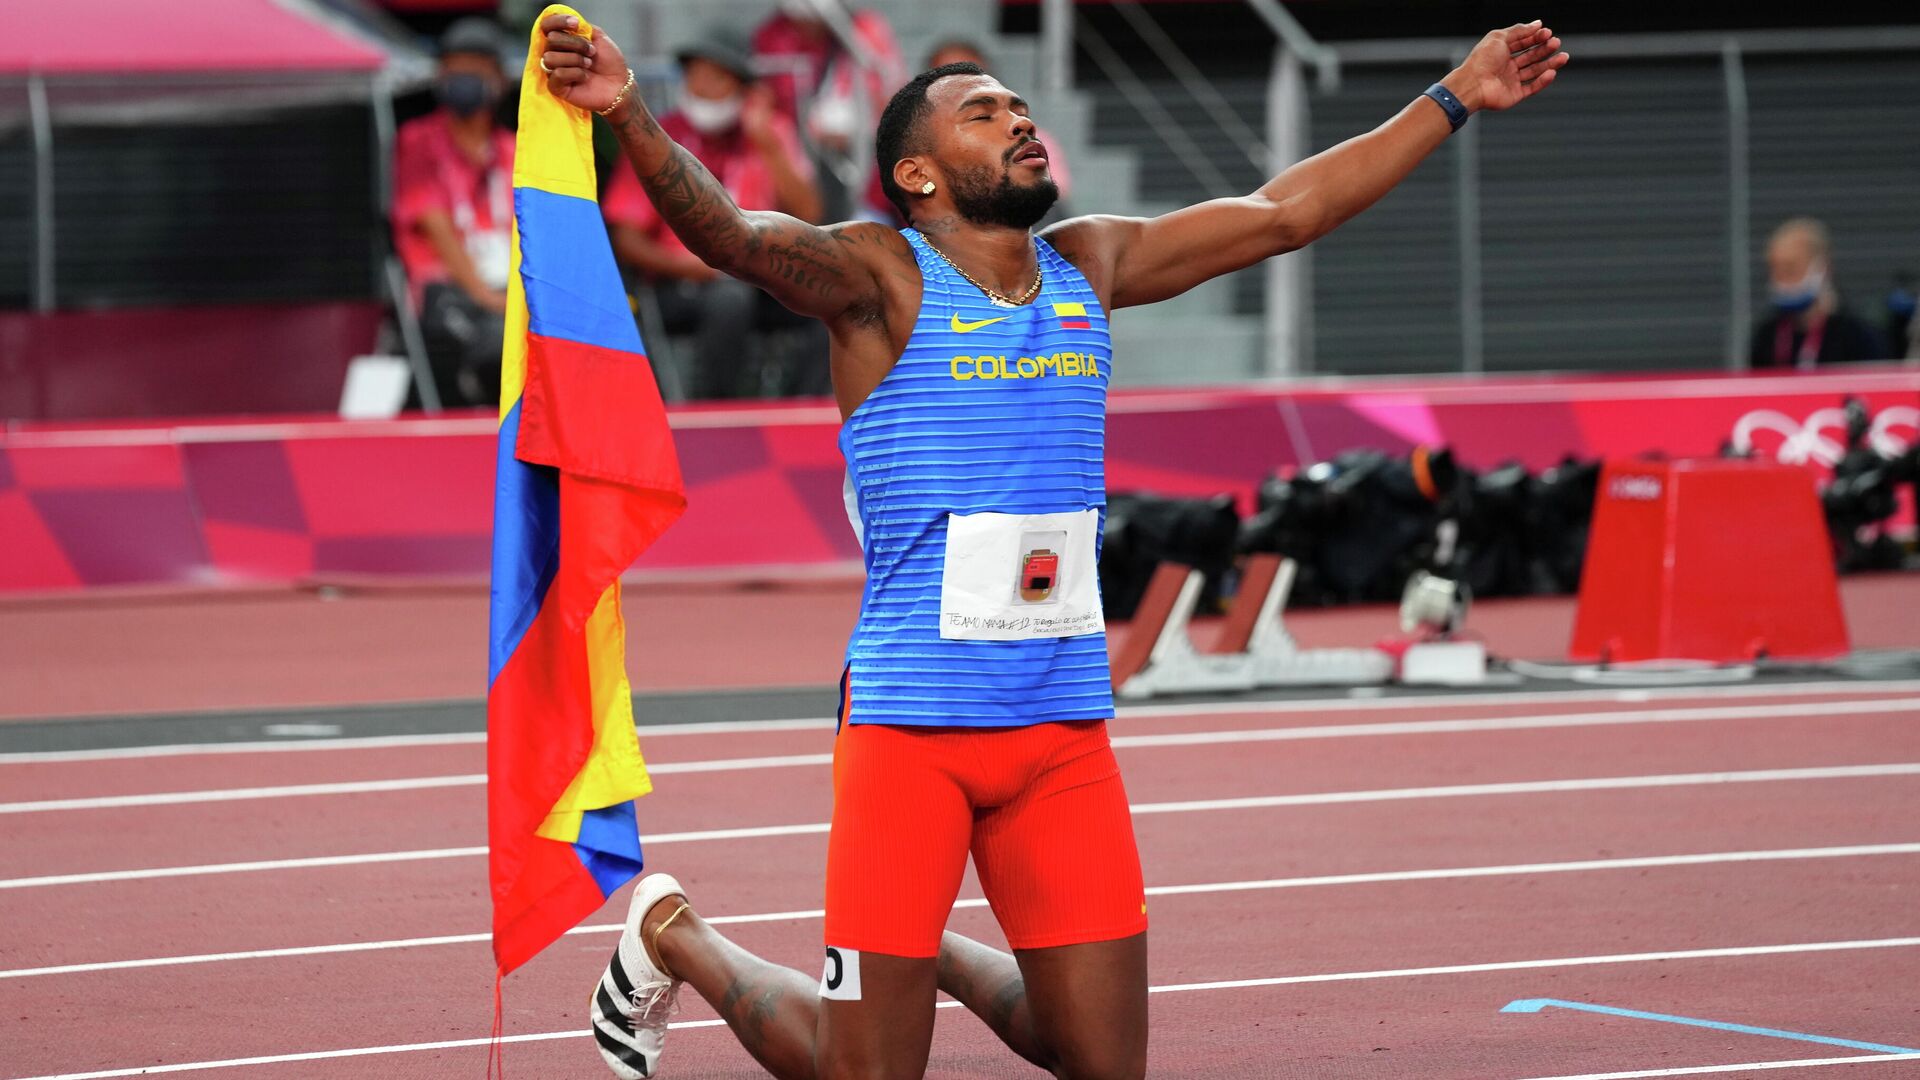 El colombiano Anthony Zambrano después de consiguir la medalla de plata en la prueba de 400 metros planos en los Juegos Olímpicos de Tokio 2020 - Sputnik Mundo, 1920, 05.08.2021